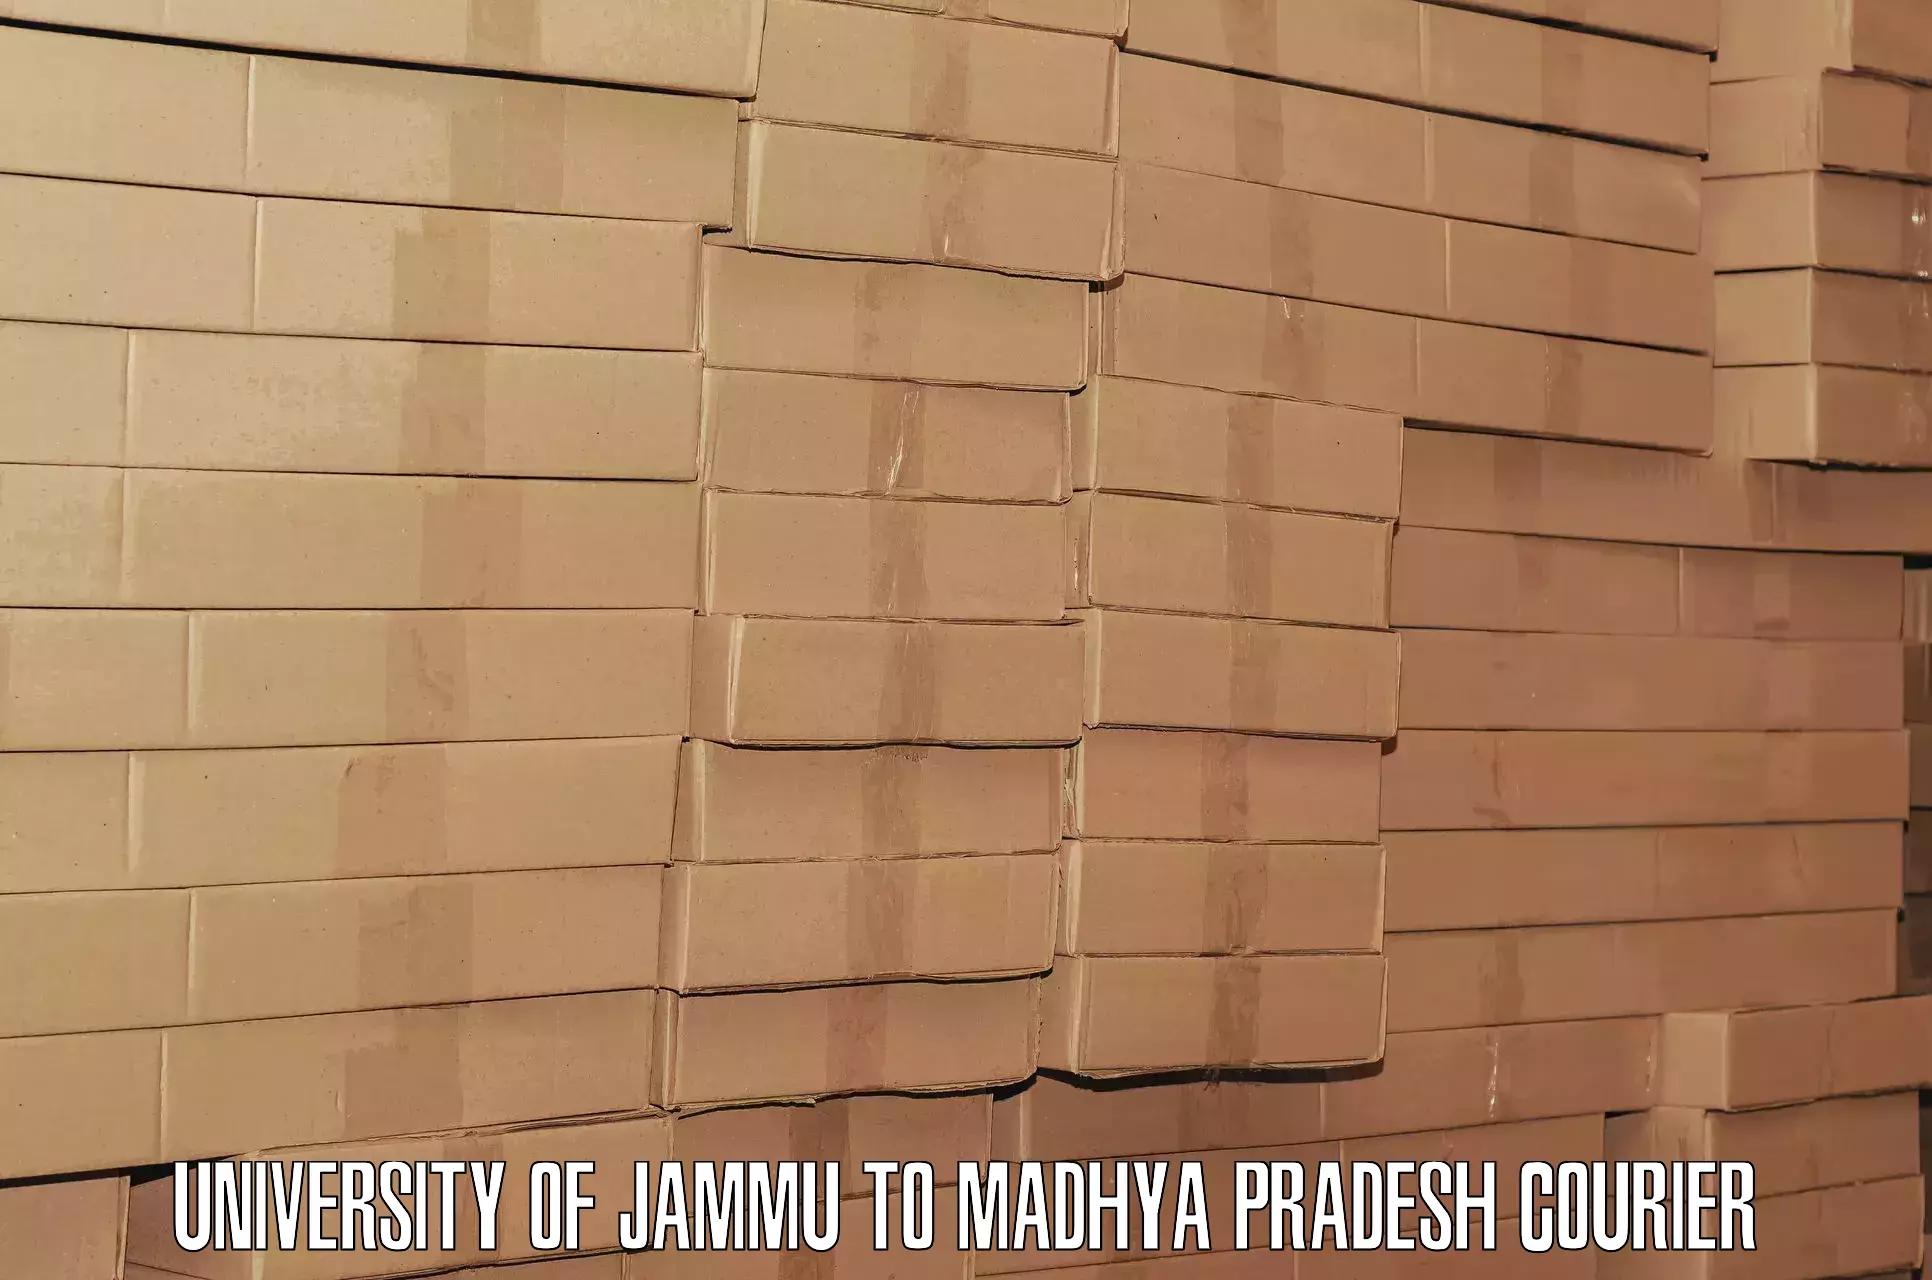 Luggage delivery optimization in University of Jammu to Jabalpur